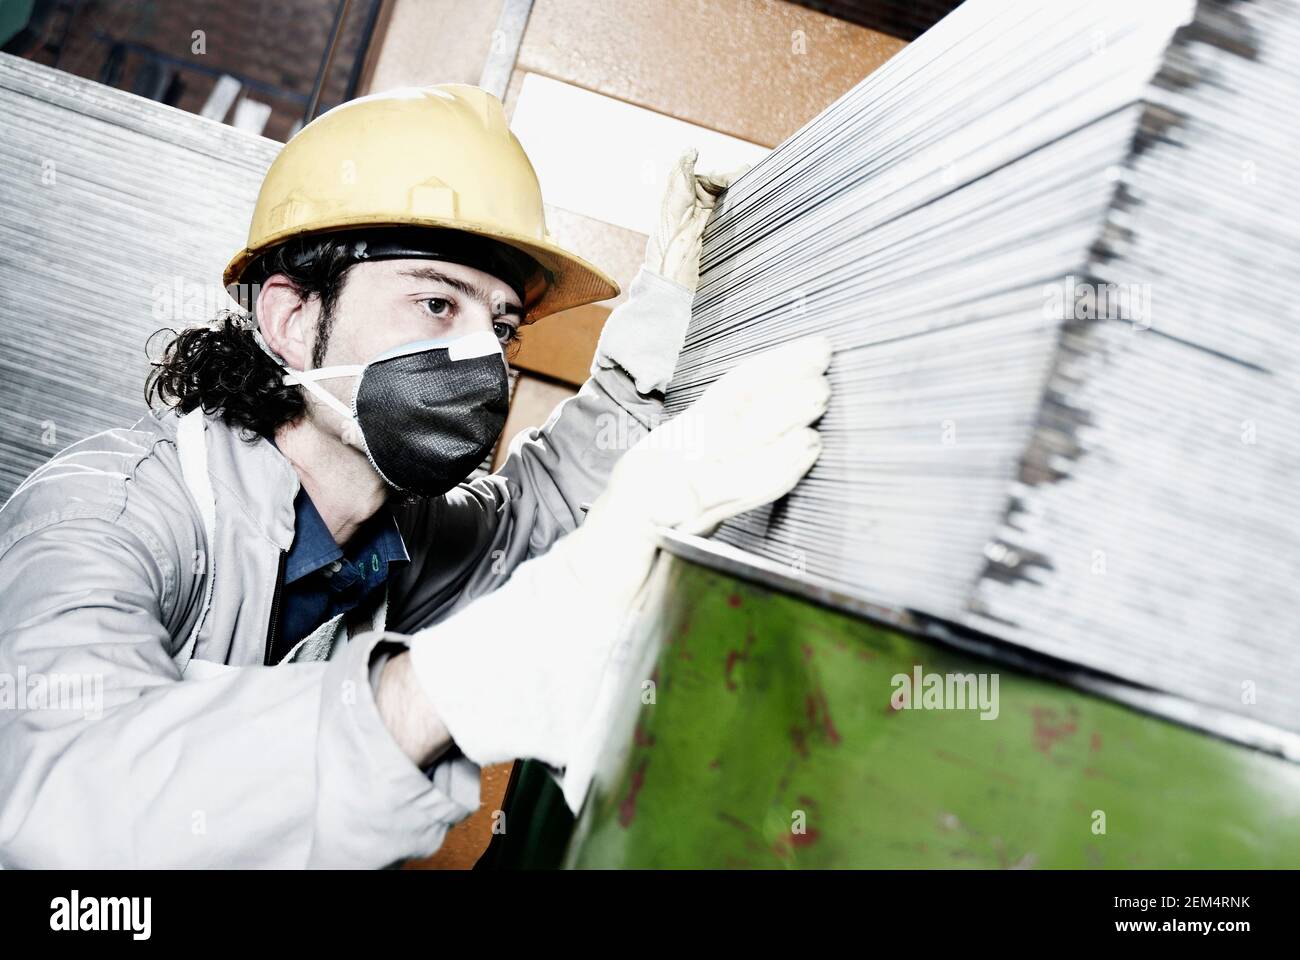 Gros plan d'un homme adulte moyen portant un casque et travailler en usine Banque D'Images